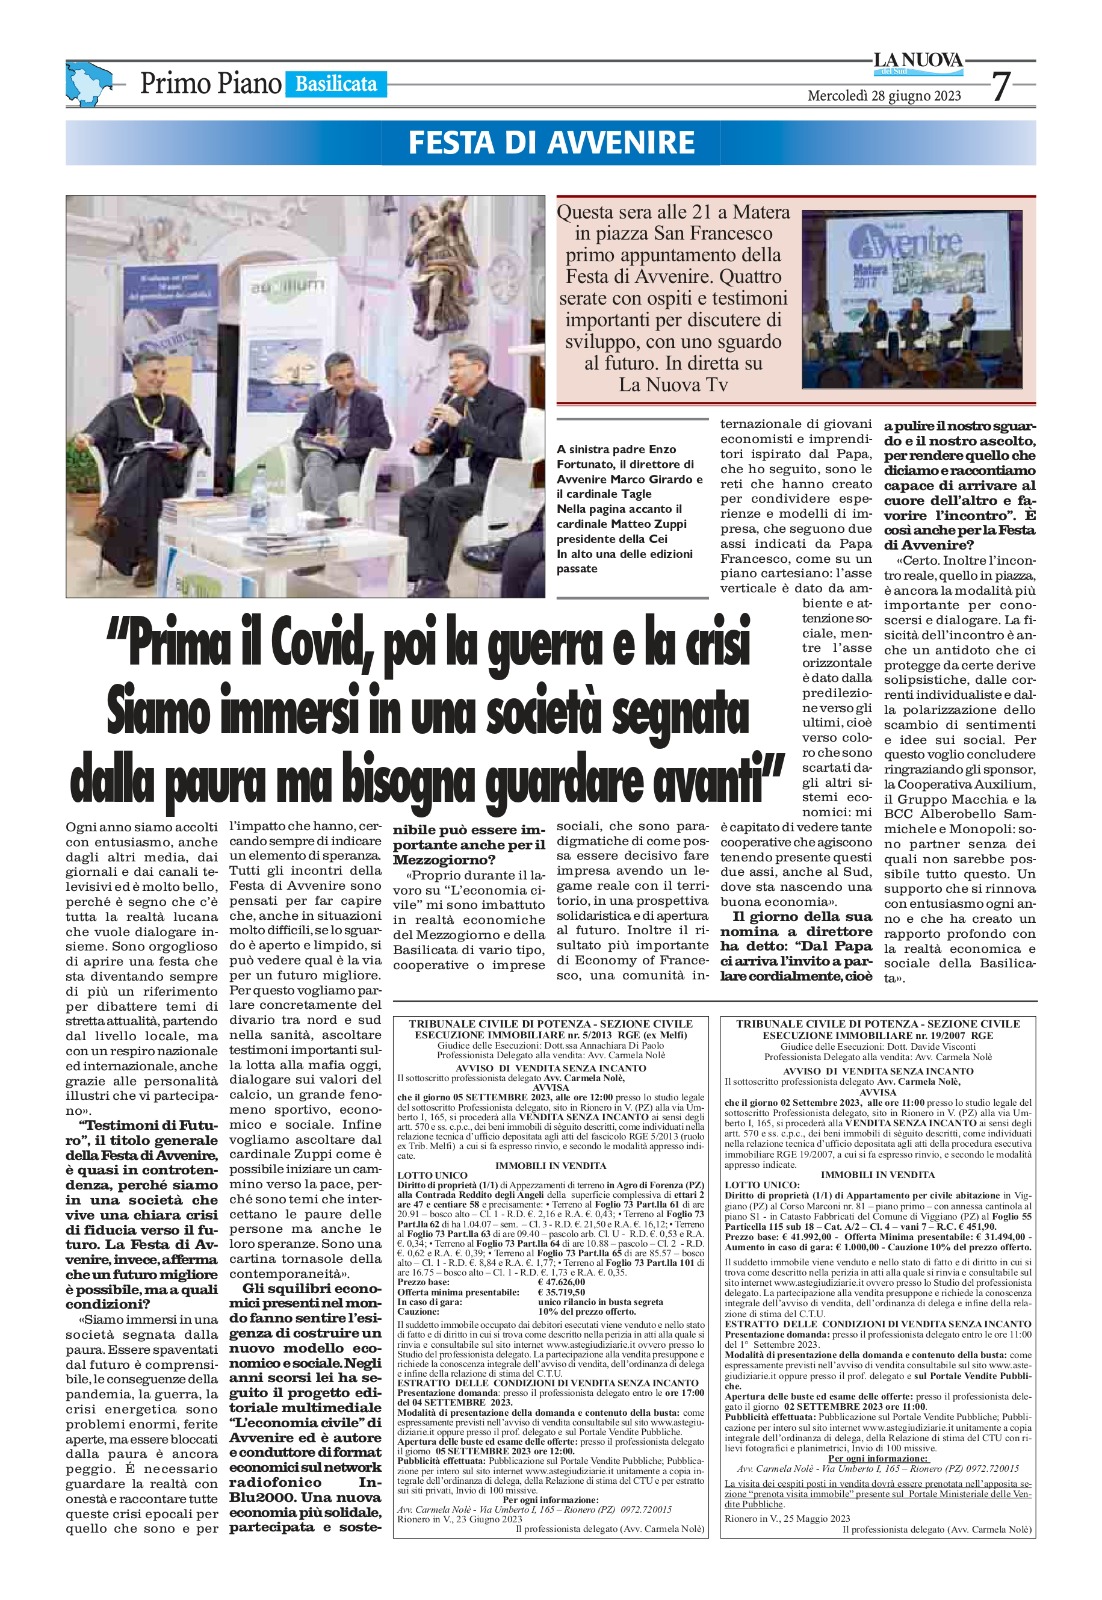 Festa di Avvenire in Basilicata, il direttore Marco Girardo intervistato da La Nuova